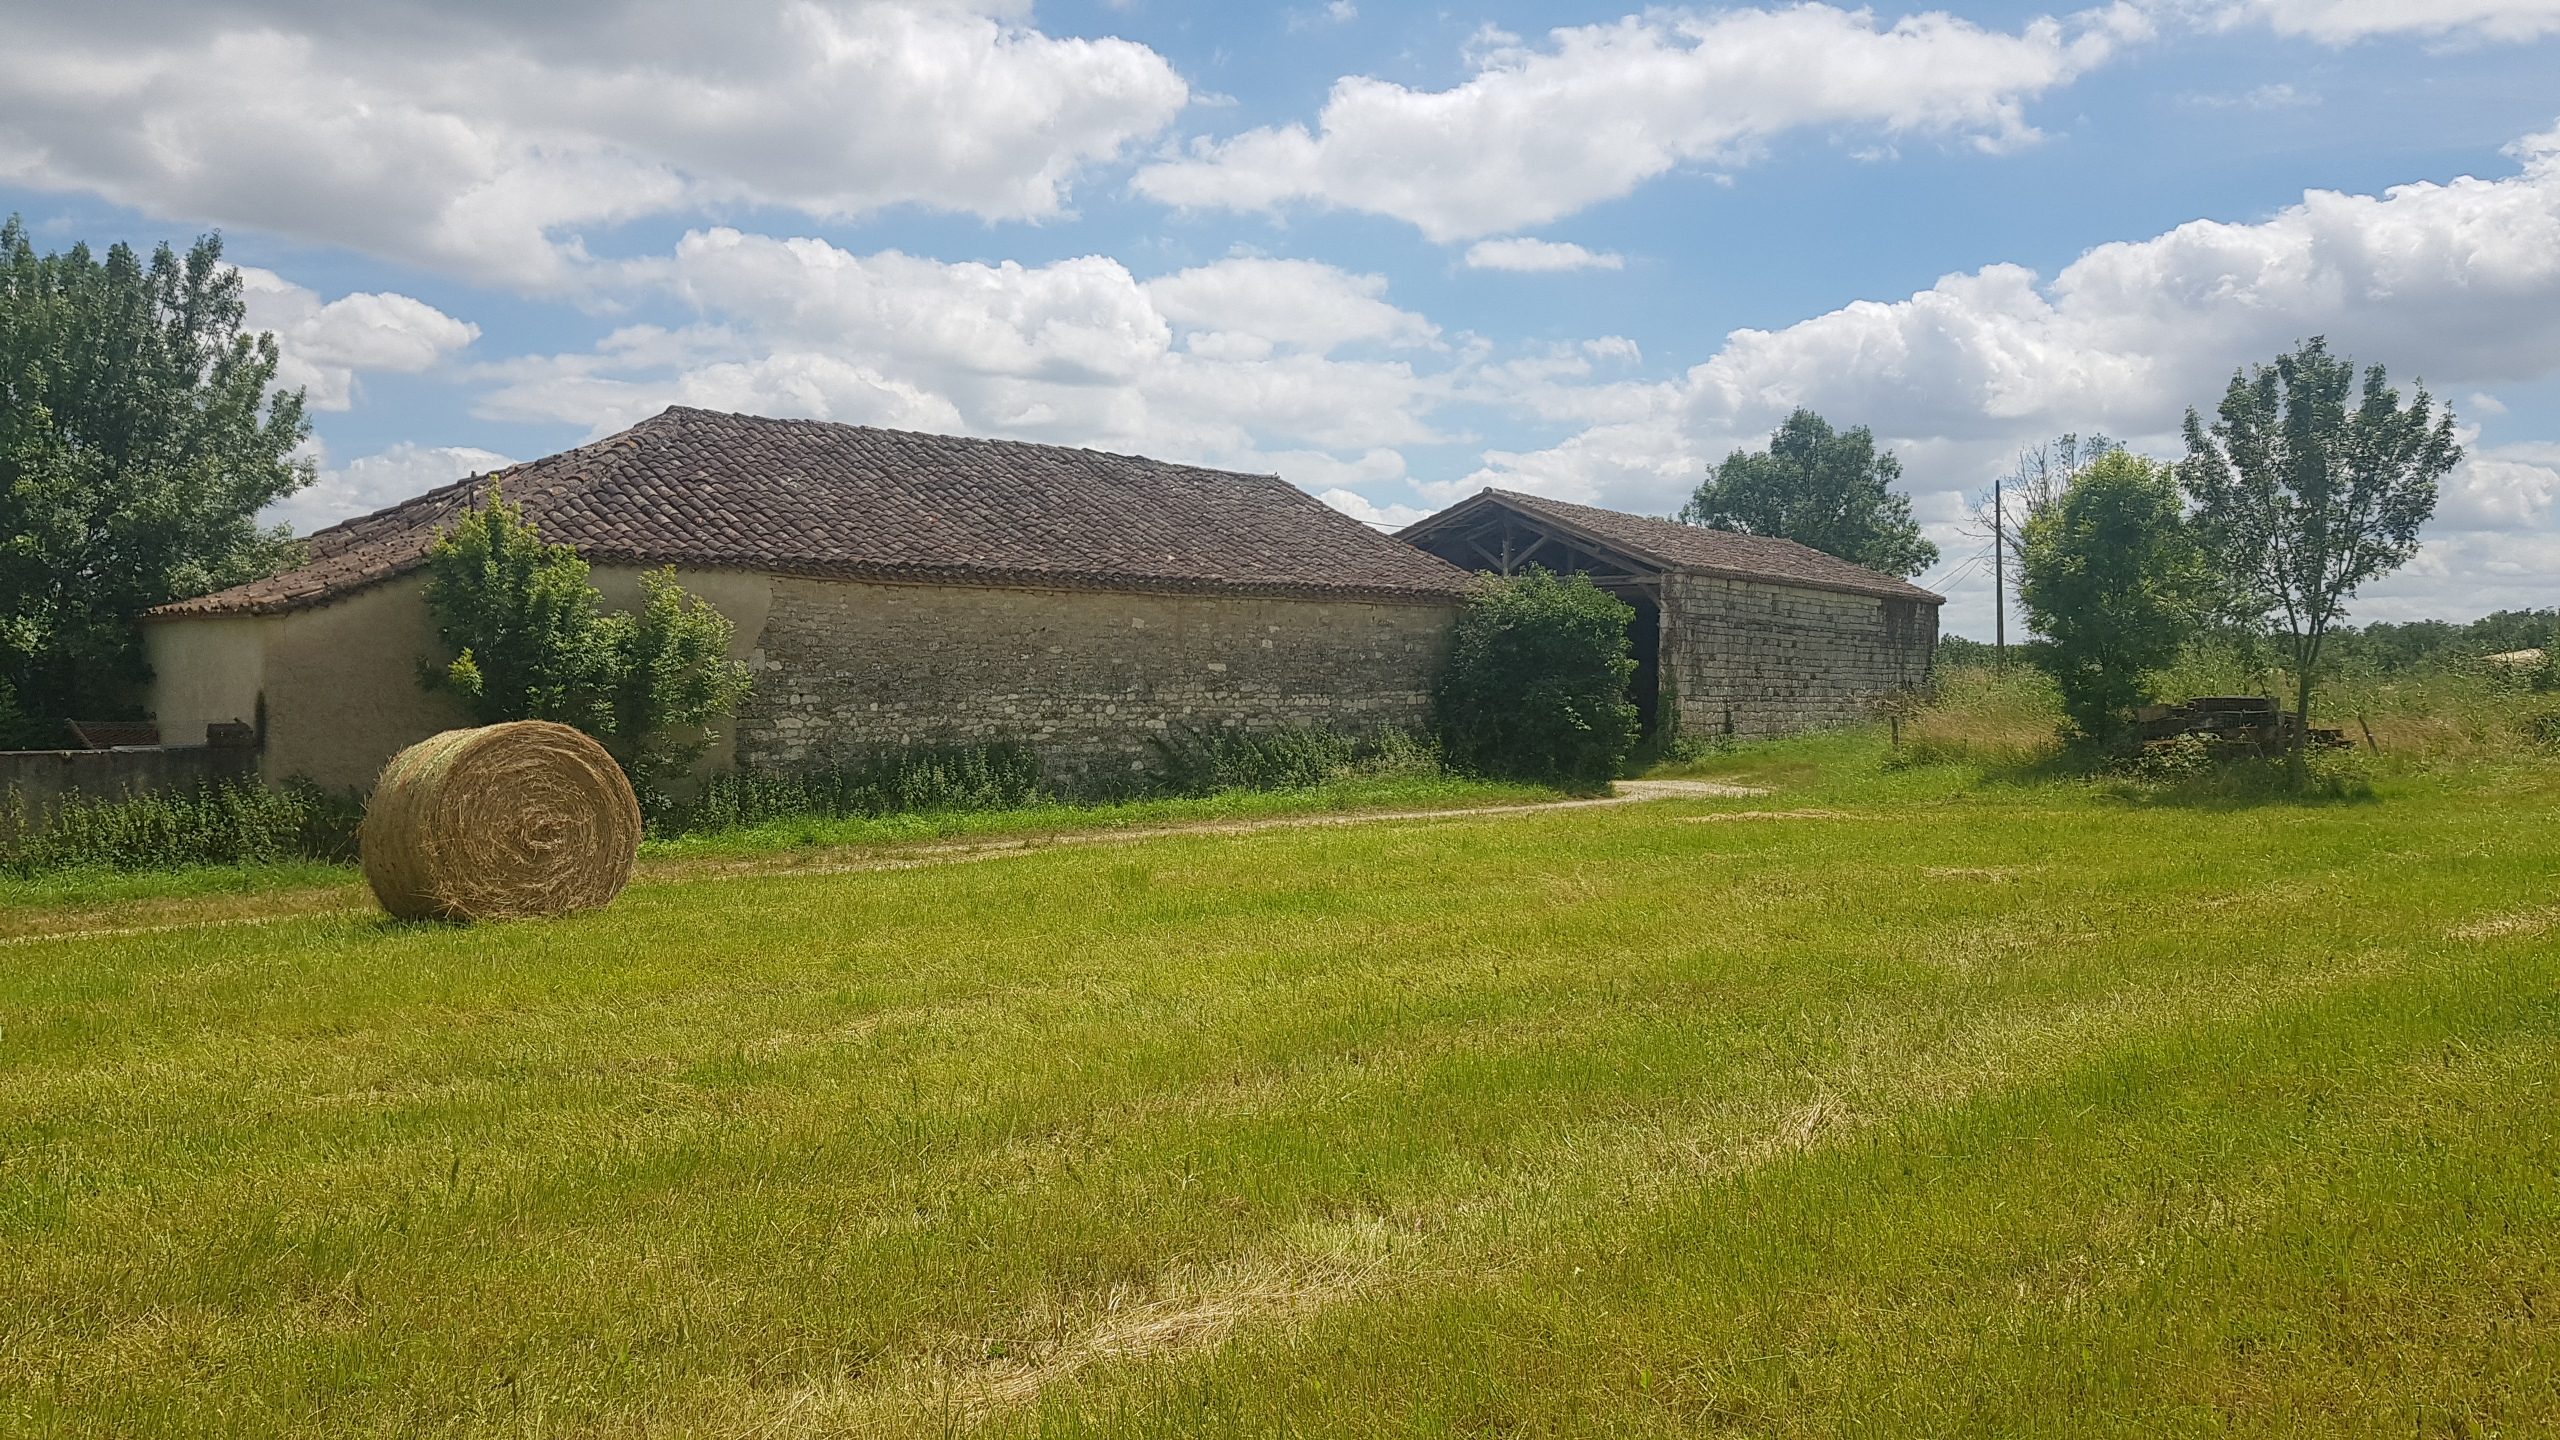 A VENDRE, le Pic du Quercy vous propose, à 10min au nord de Caussade, dans le Quercy, un ensemble immobilier sur 6.5ha environ comprenant:
- une ancienne grange/écurie en pierre de 280m2 (avec CU)
- un bâtiment de stockage de 485m2 fermé en brique avec grands portails
- une grange en pierre attenante de 200m2 environ
- une grange de 100m2 à proximité.
Le tout sur 6.5ha de prairies, terrain plat arboré (idéal chevaux, moutons...).
Trois puits viennent compléter cet ensemble calme et bucolique.
Commerces, services et école à 5min, Cahors à 15min, Montauban à 30min, Toulouse à 1h.

Les informations sur les risques auxquels ce bien est exposé sont disponibles sur le site Géorisques : www.georisques.gouv.fr